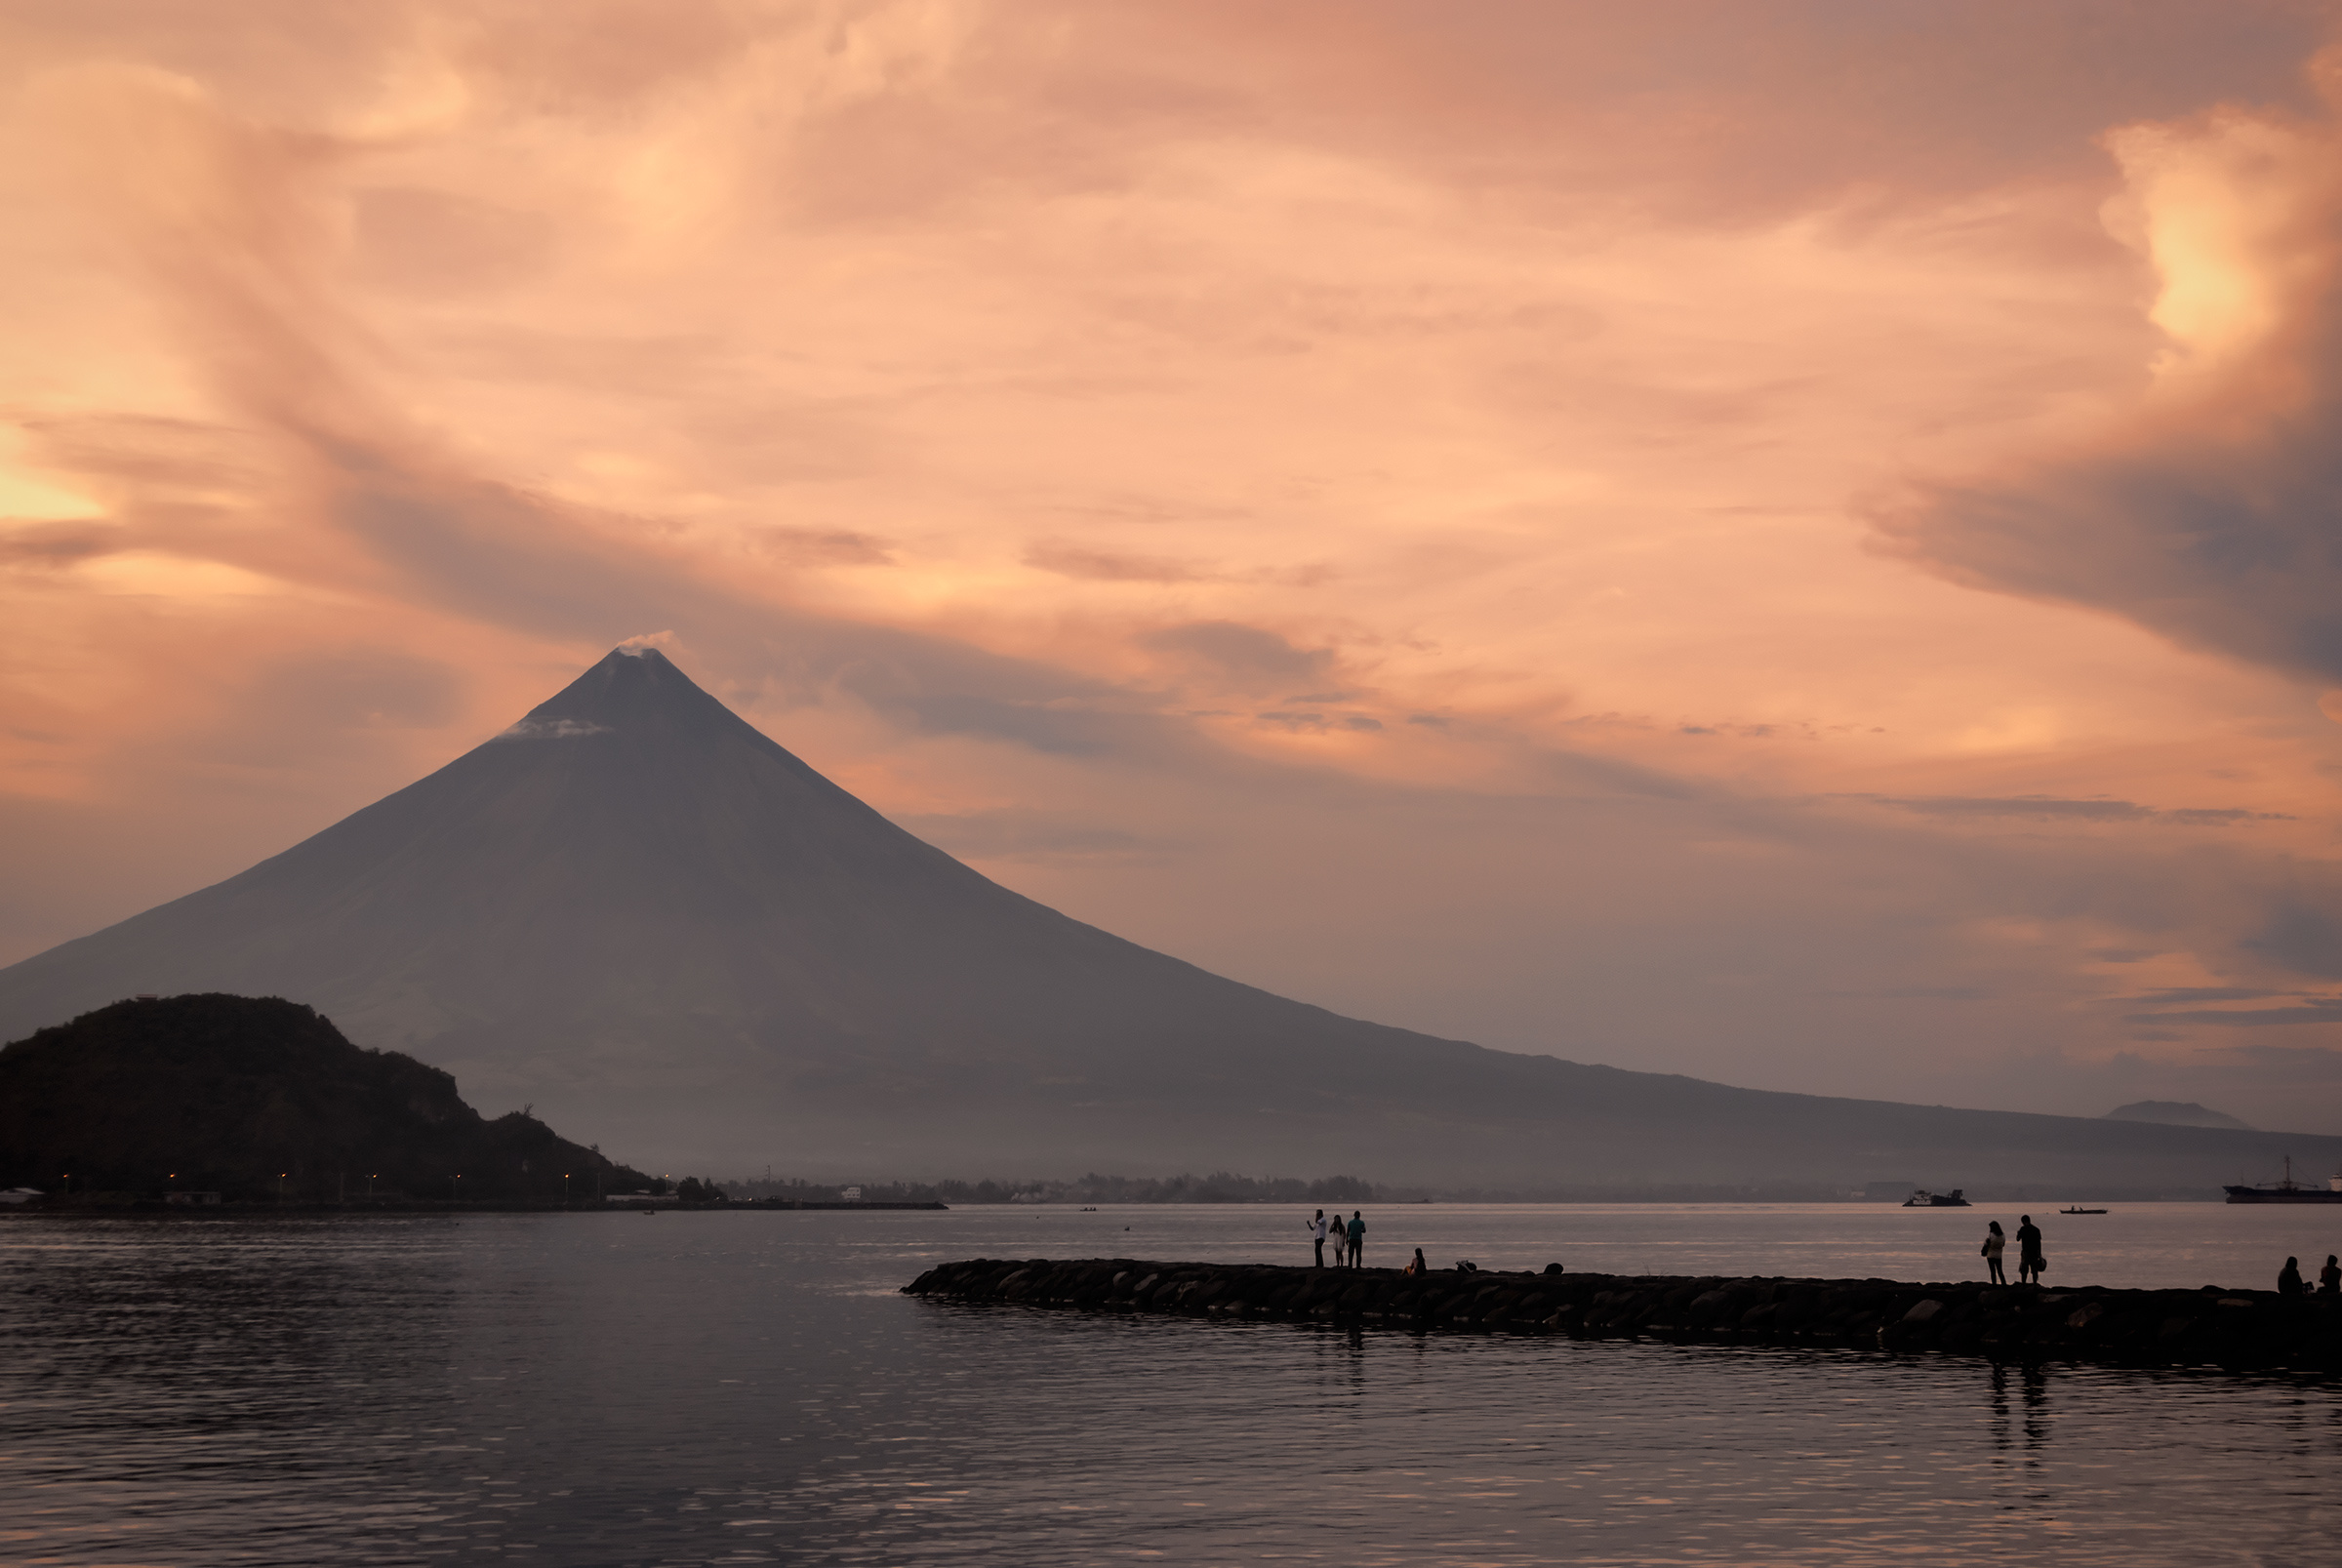 Le volcan Mayon est entré en éruption et menace les Philippines. Le voici en photo au soleil couchant. © ottosphotos, Fotolia